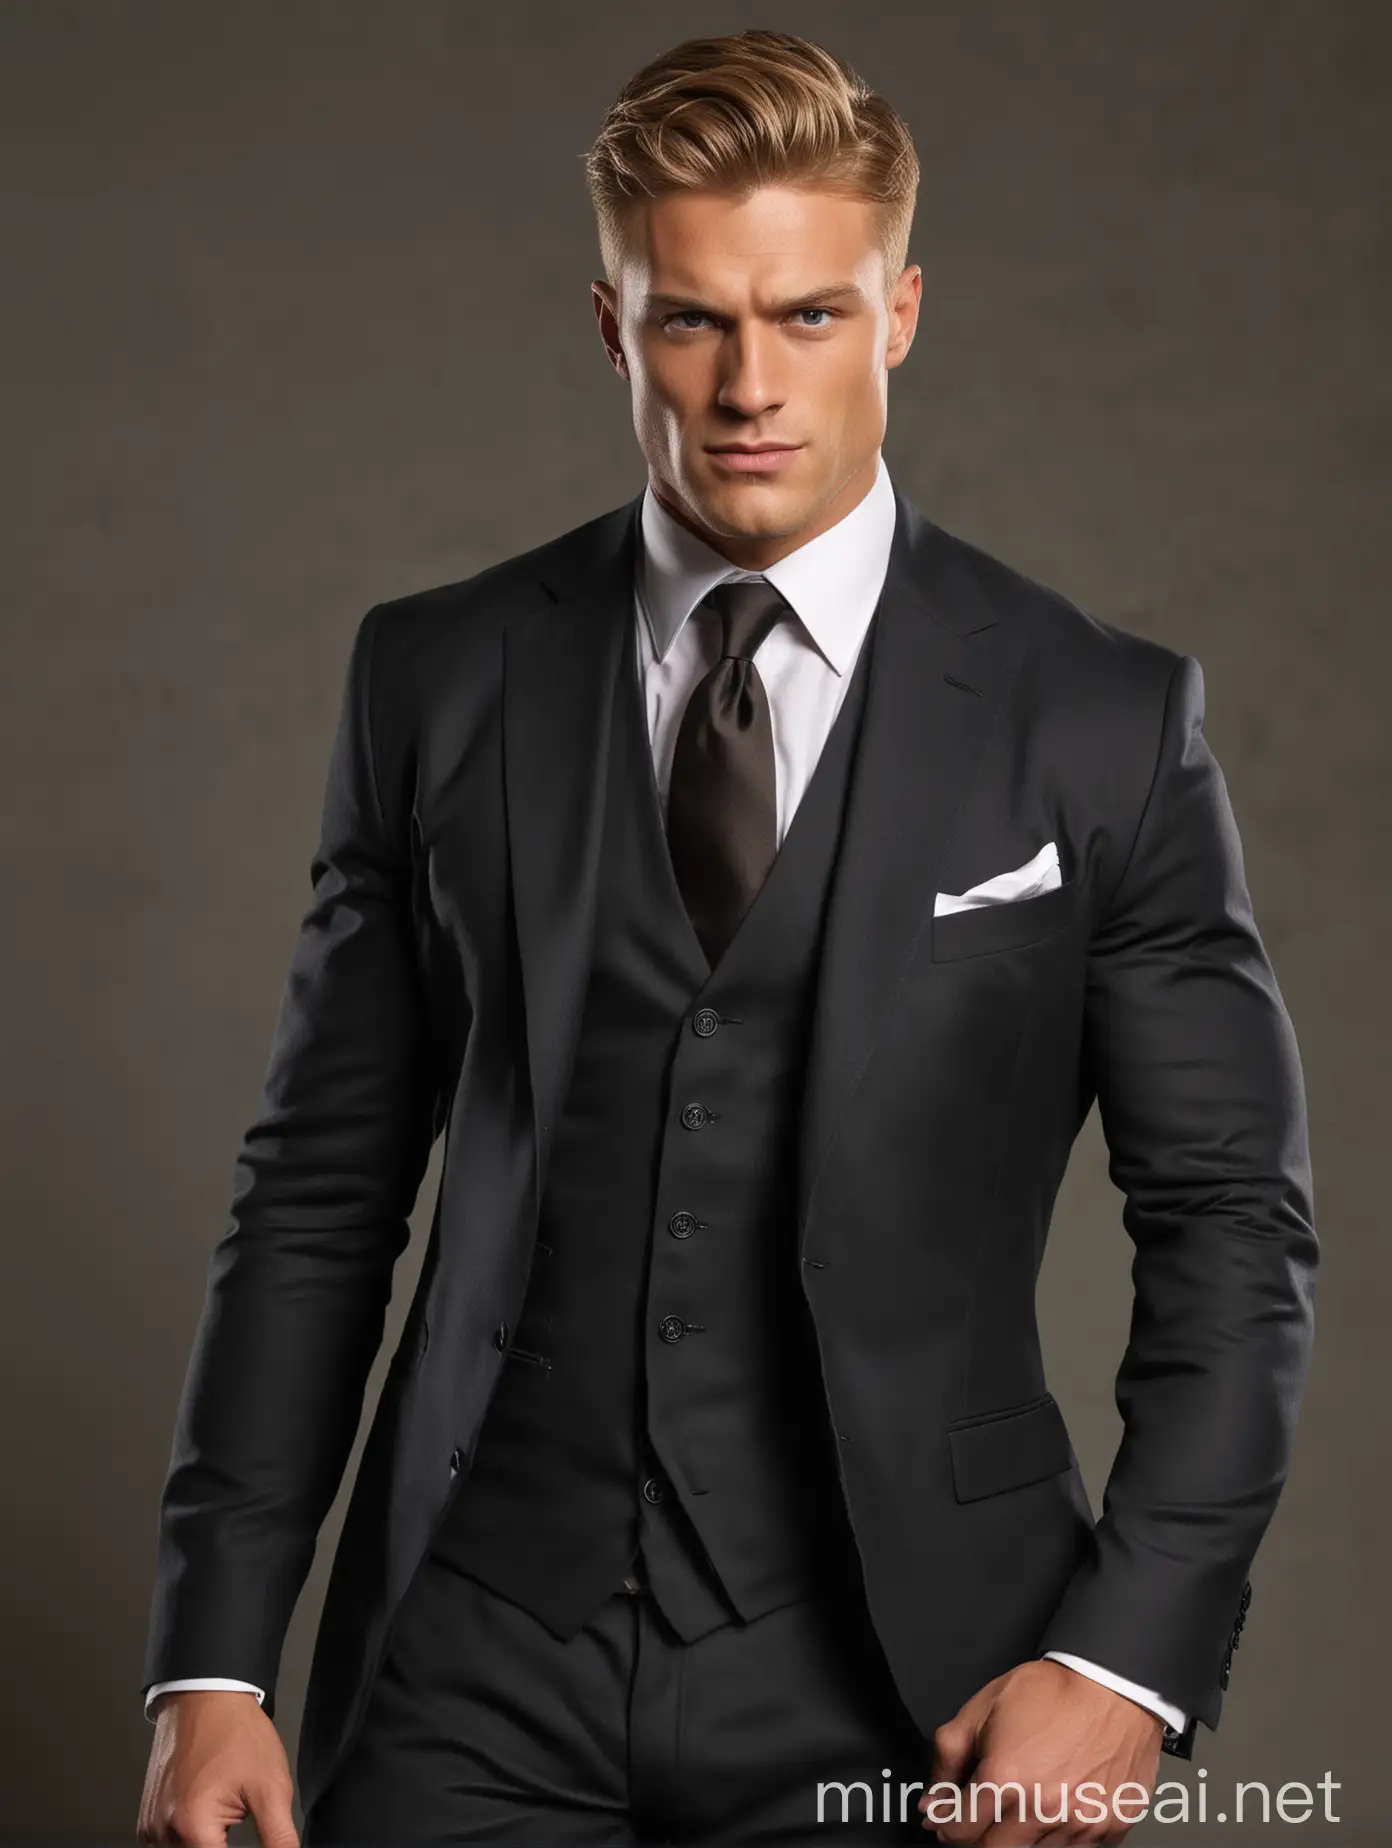 Hombre musculoso, blanco, de cabello marrón claro, traje a la medida de tres piezas negro y corbata gris, con cara de pícaro 